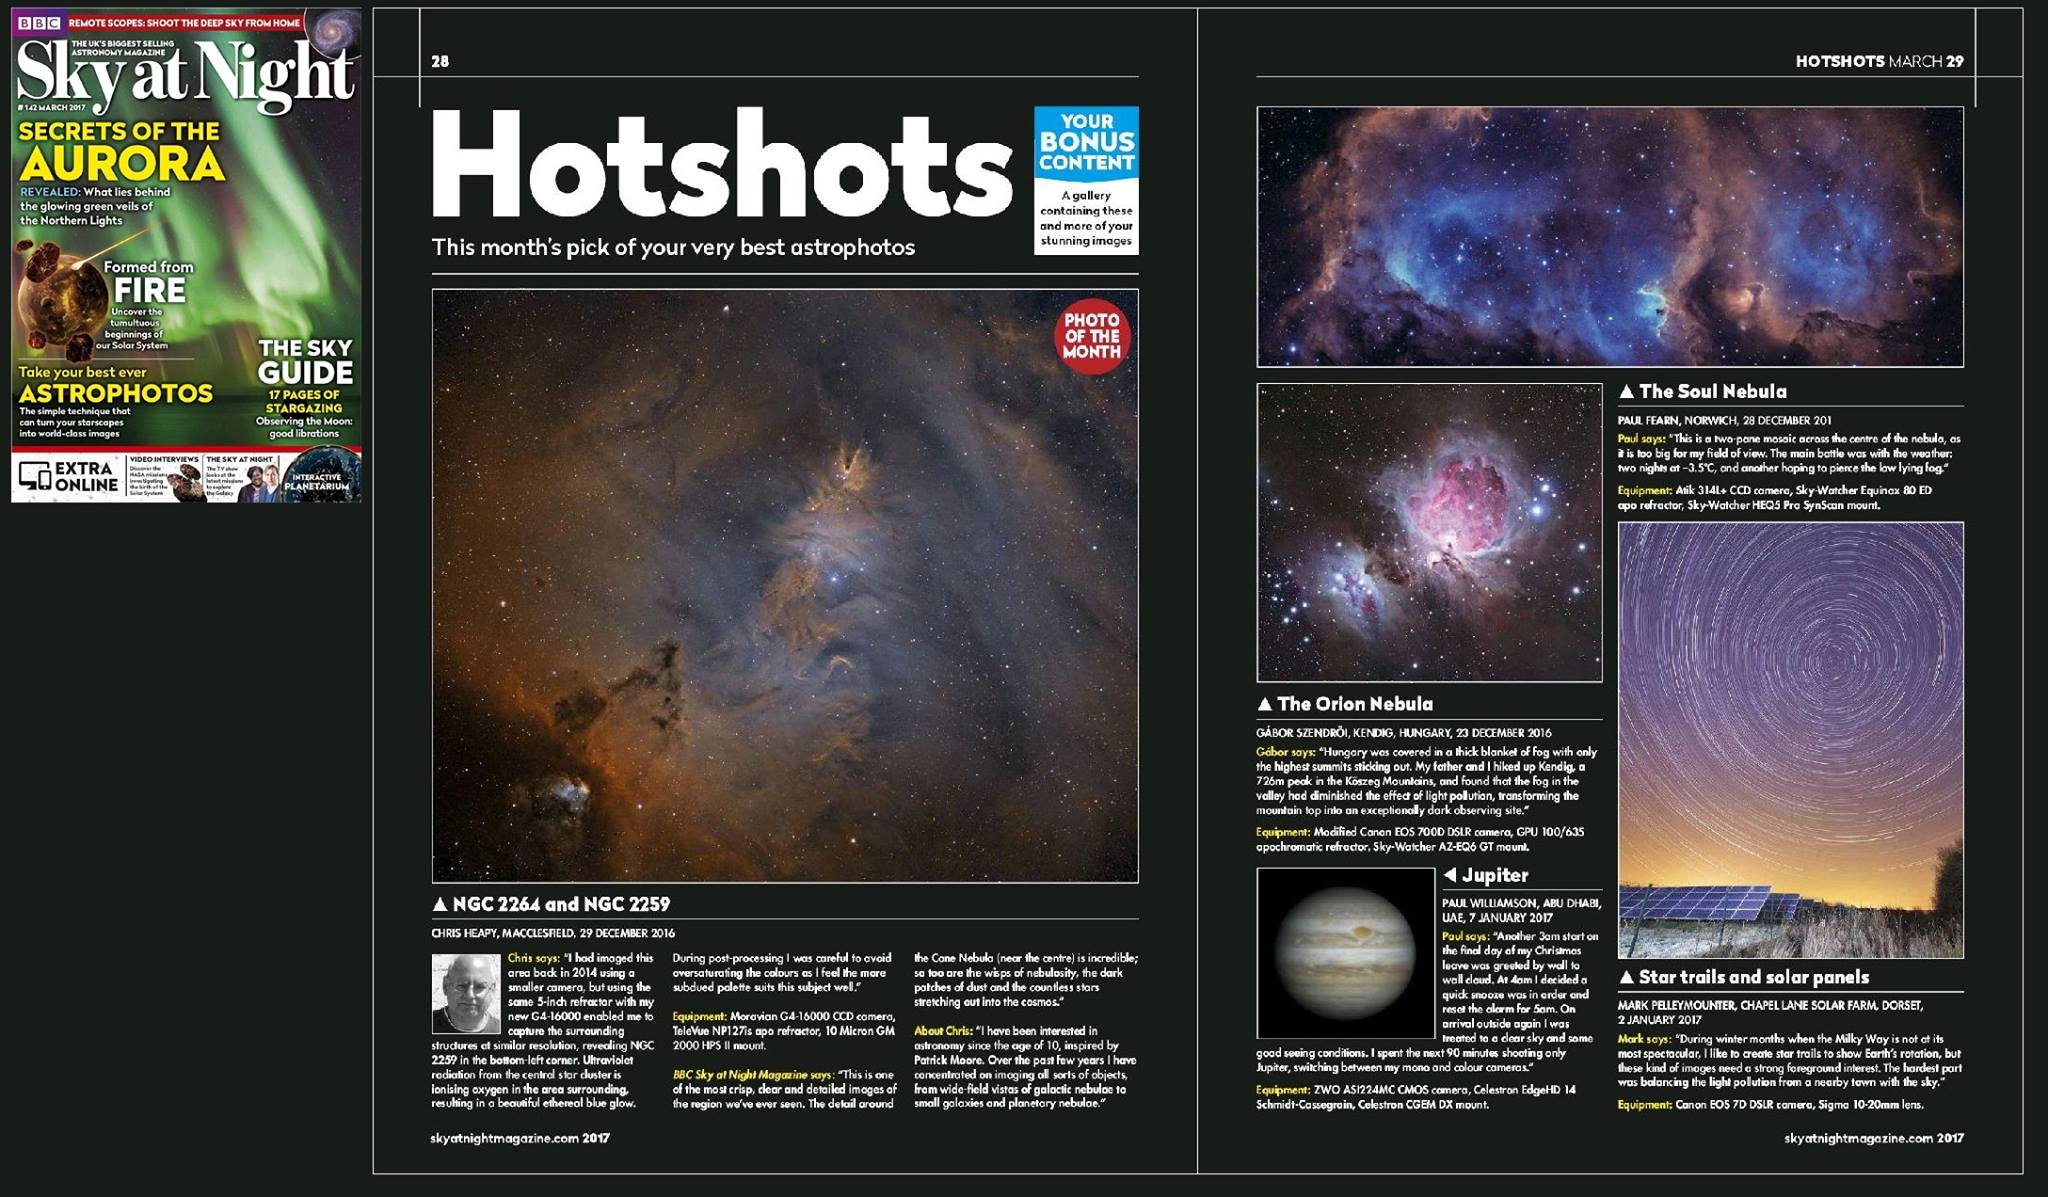 Vasi csillagászok fotóját közli egy brit lap